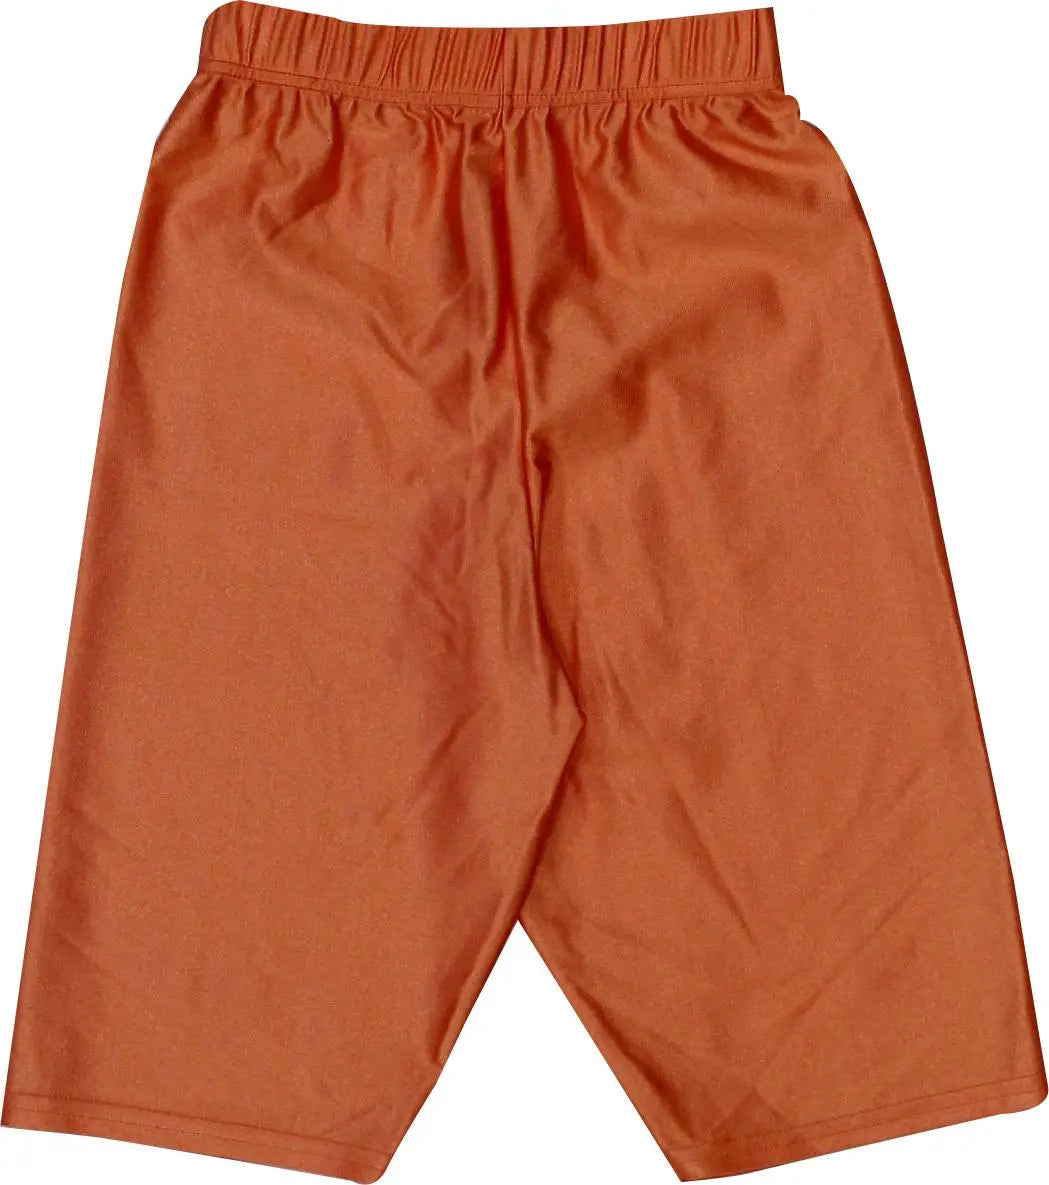 Confezioni - Orange Biker Short- ThriftTale.com - Vintage and second handclothing